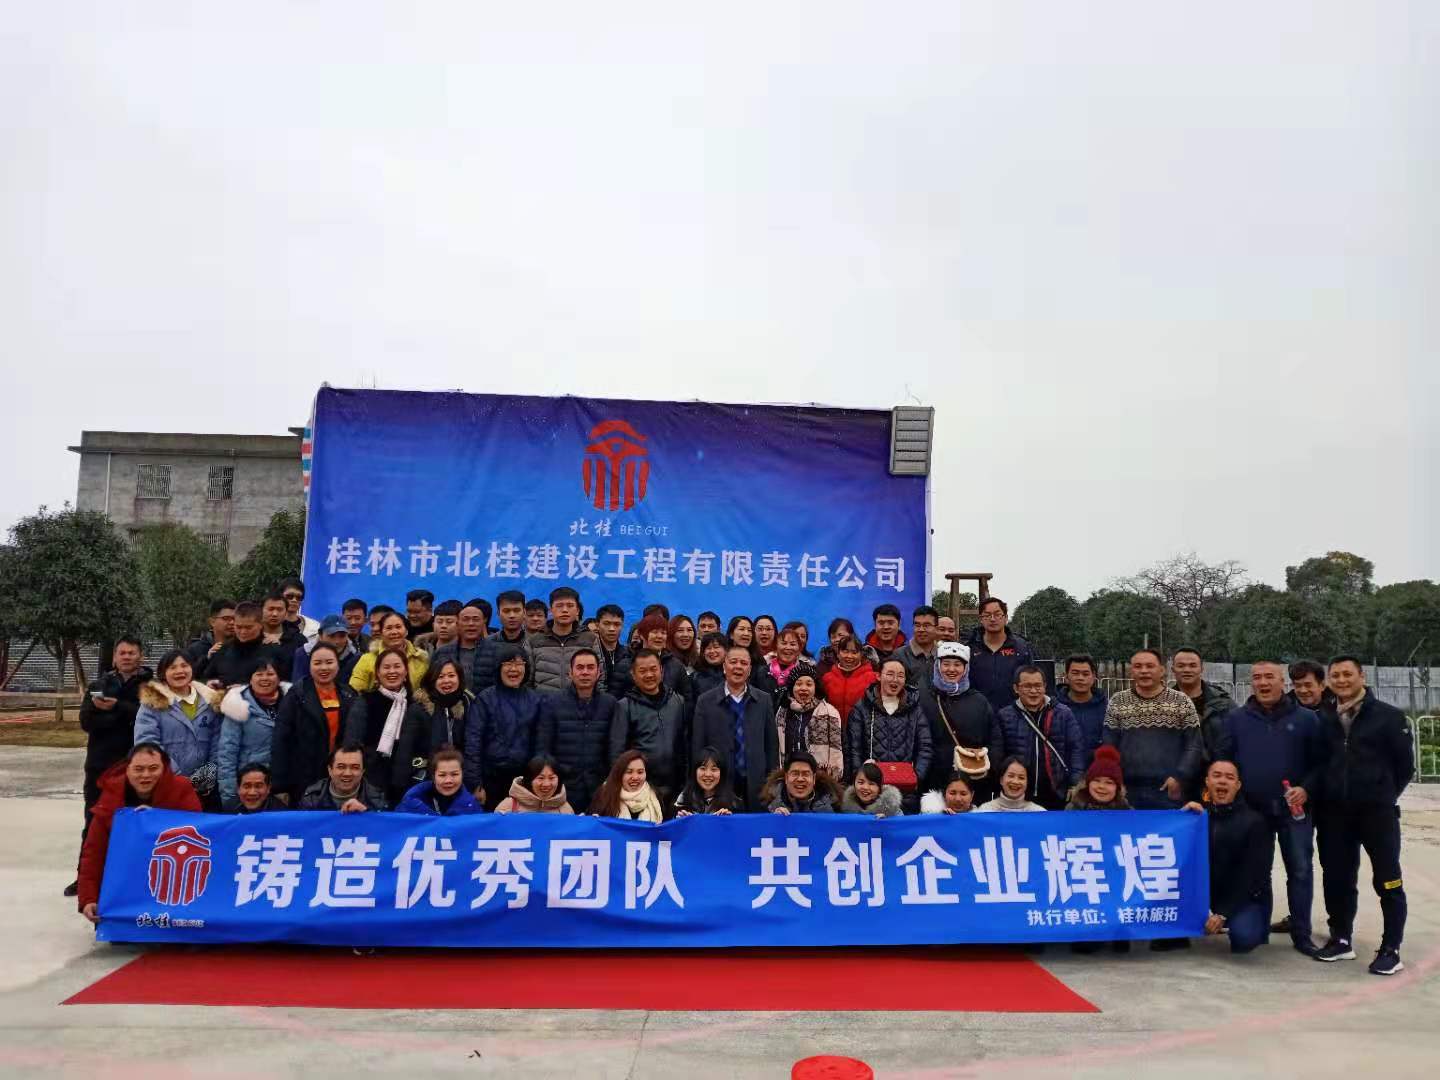 桂林市北桂建设工程有限责任公司到桂林旅拓进行拓展年会活动